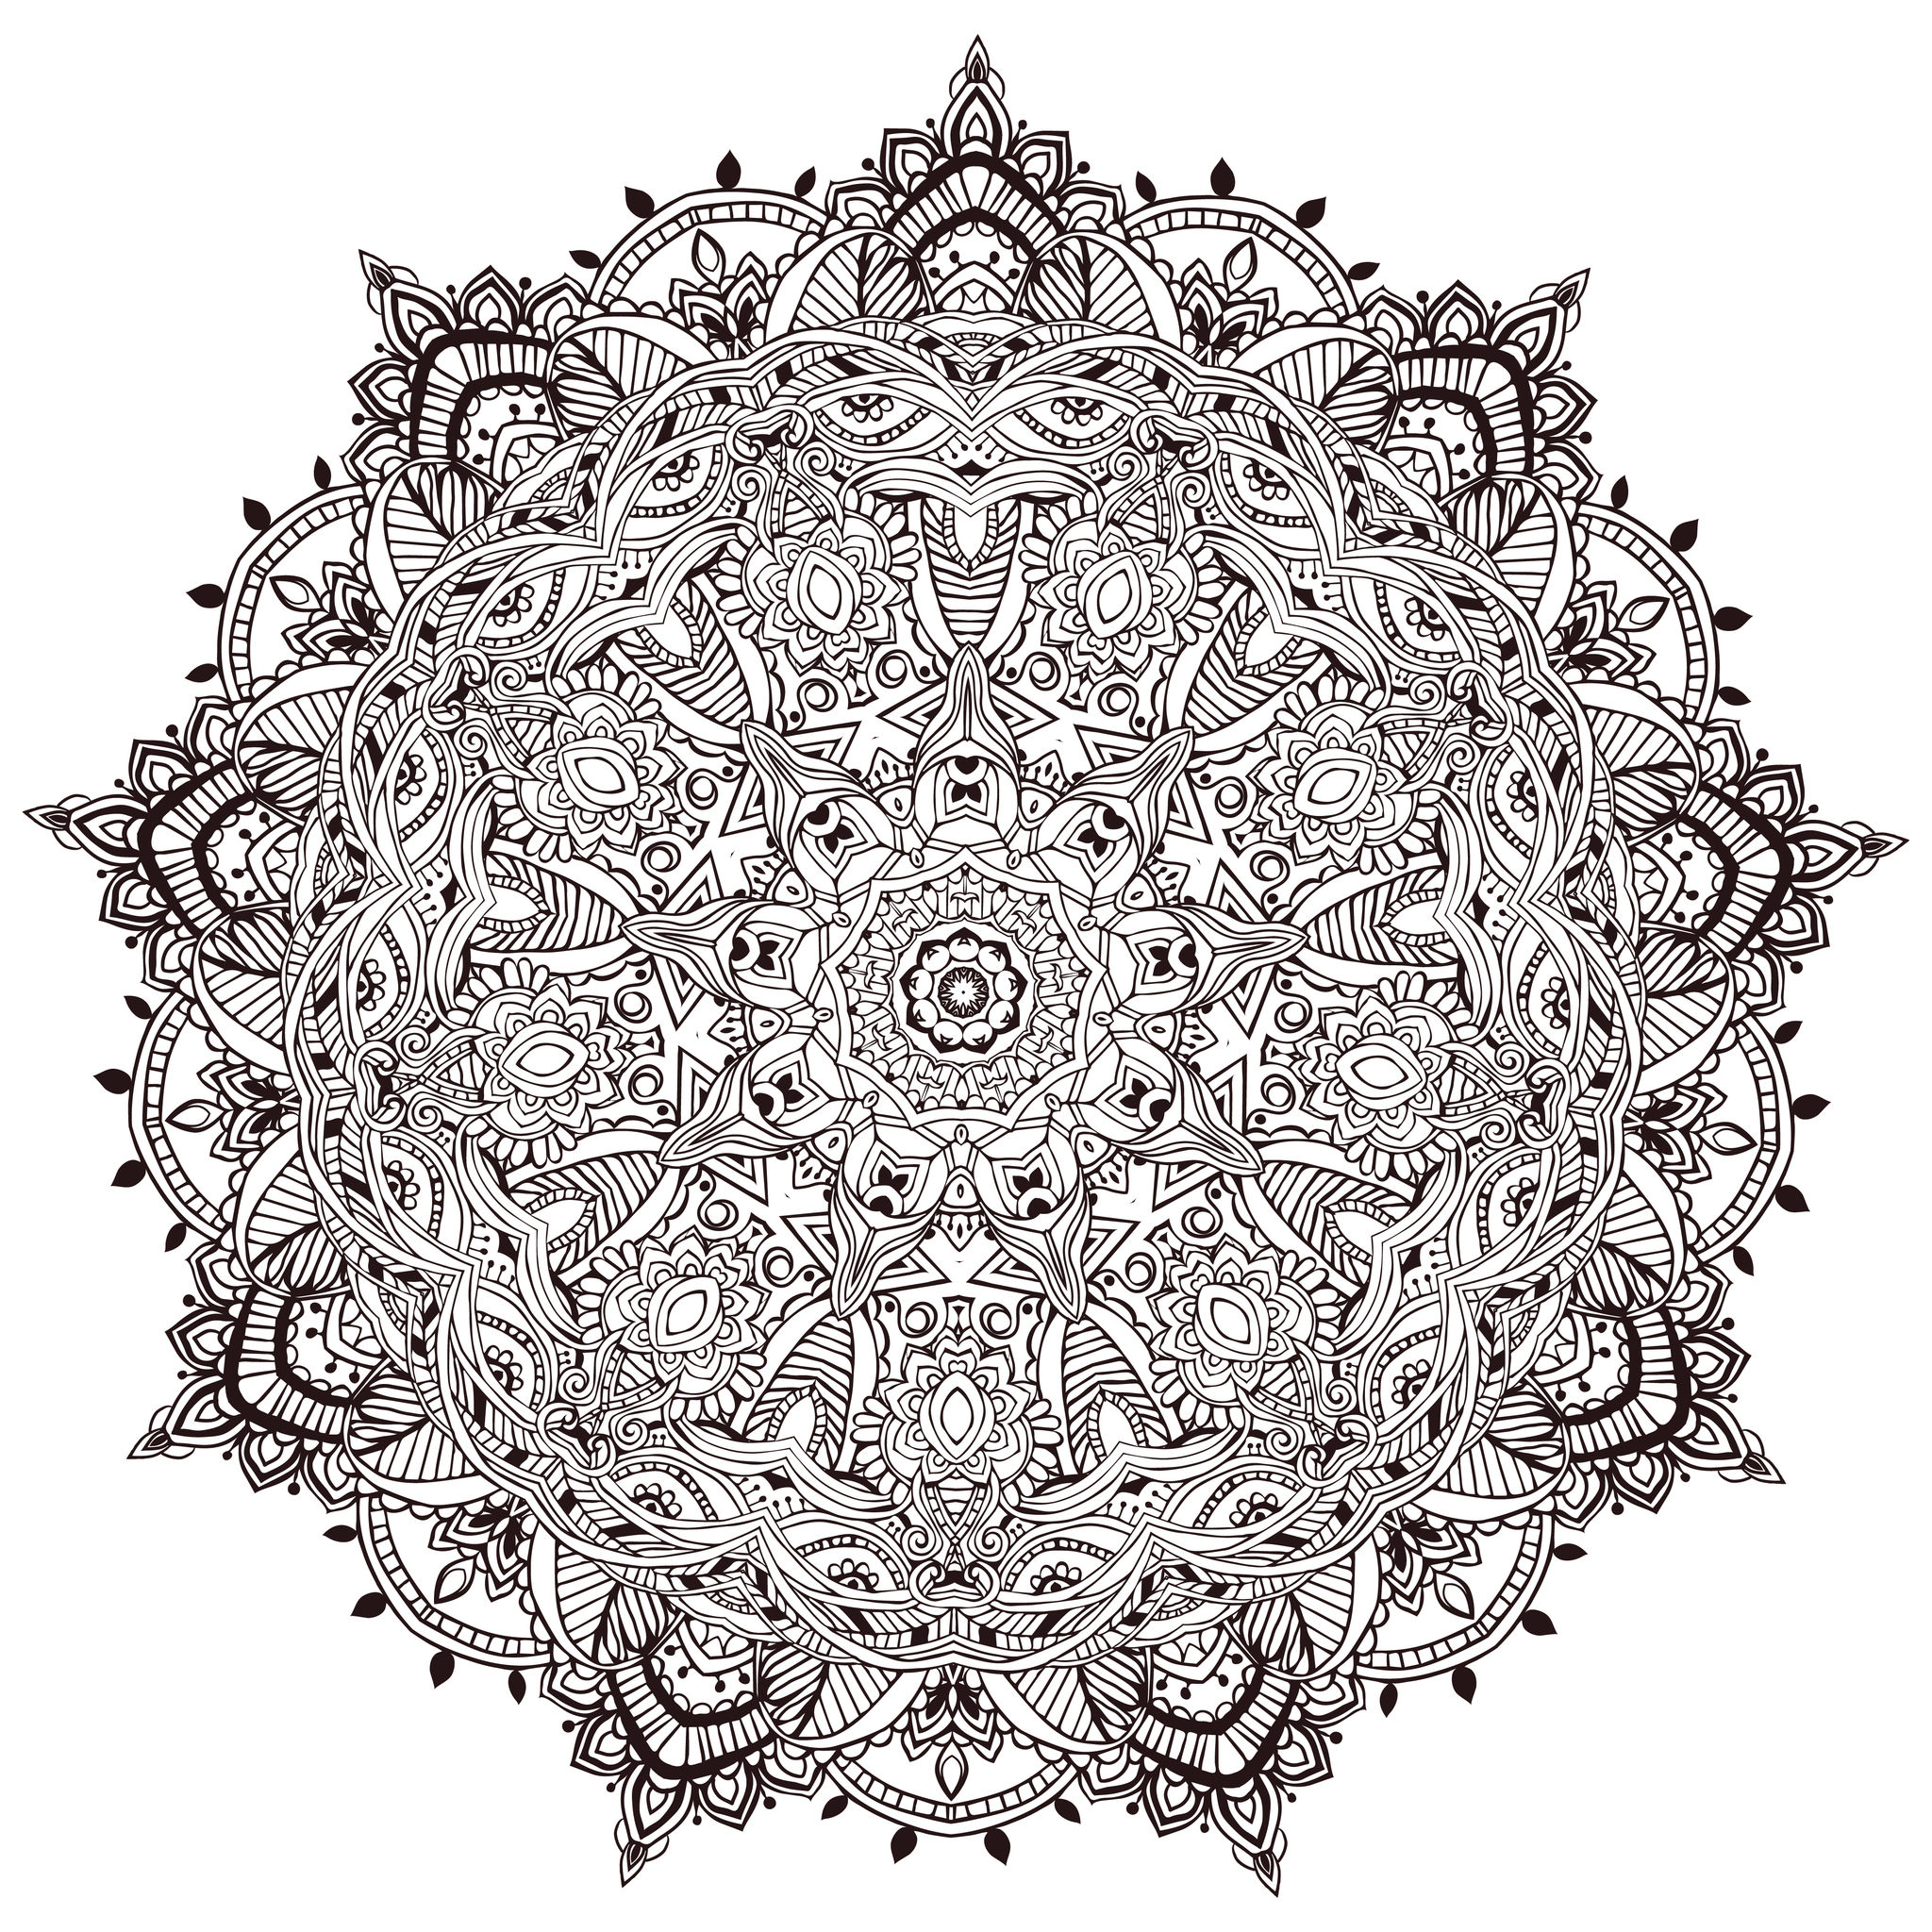 Mandala full of little details, Artist : Anvino   Source : 123rf